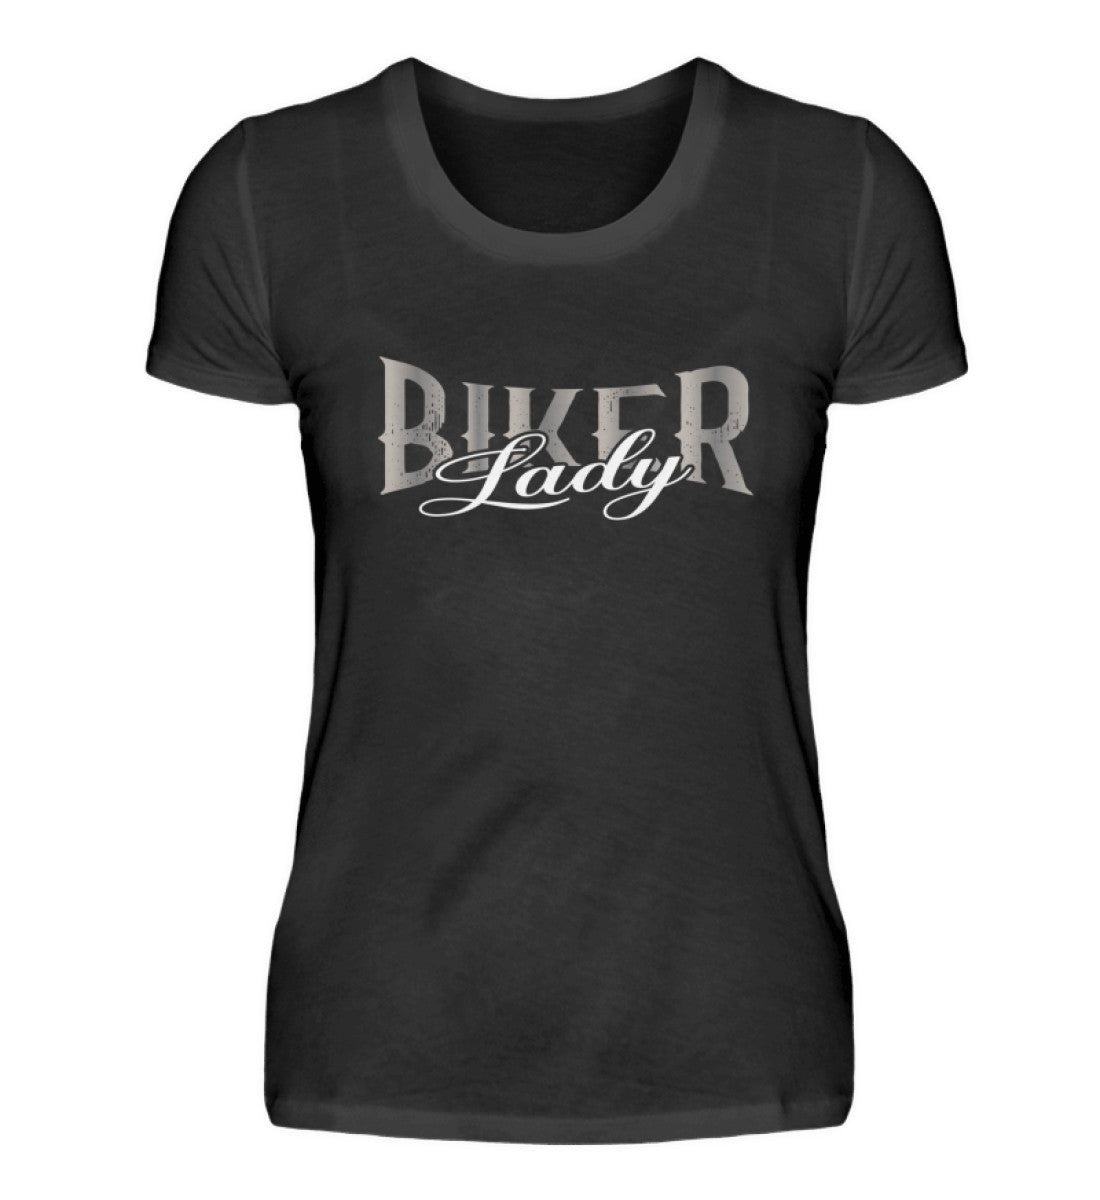 Ein T-Shirt für Motorradfahrerinnen von Wingbikers mit dem Aufdruck, Biker Lady, in schwarz.